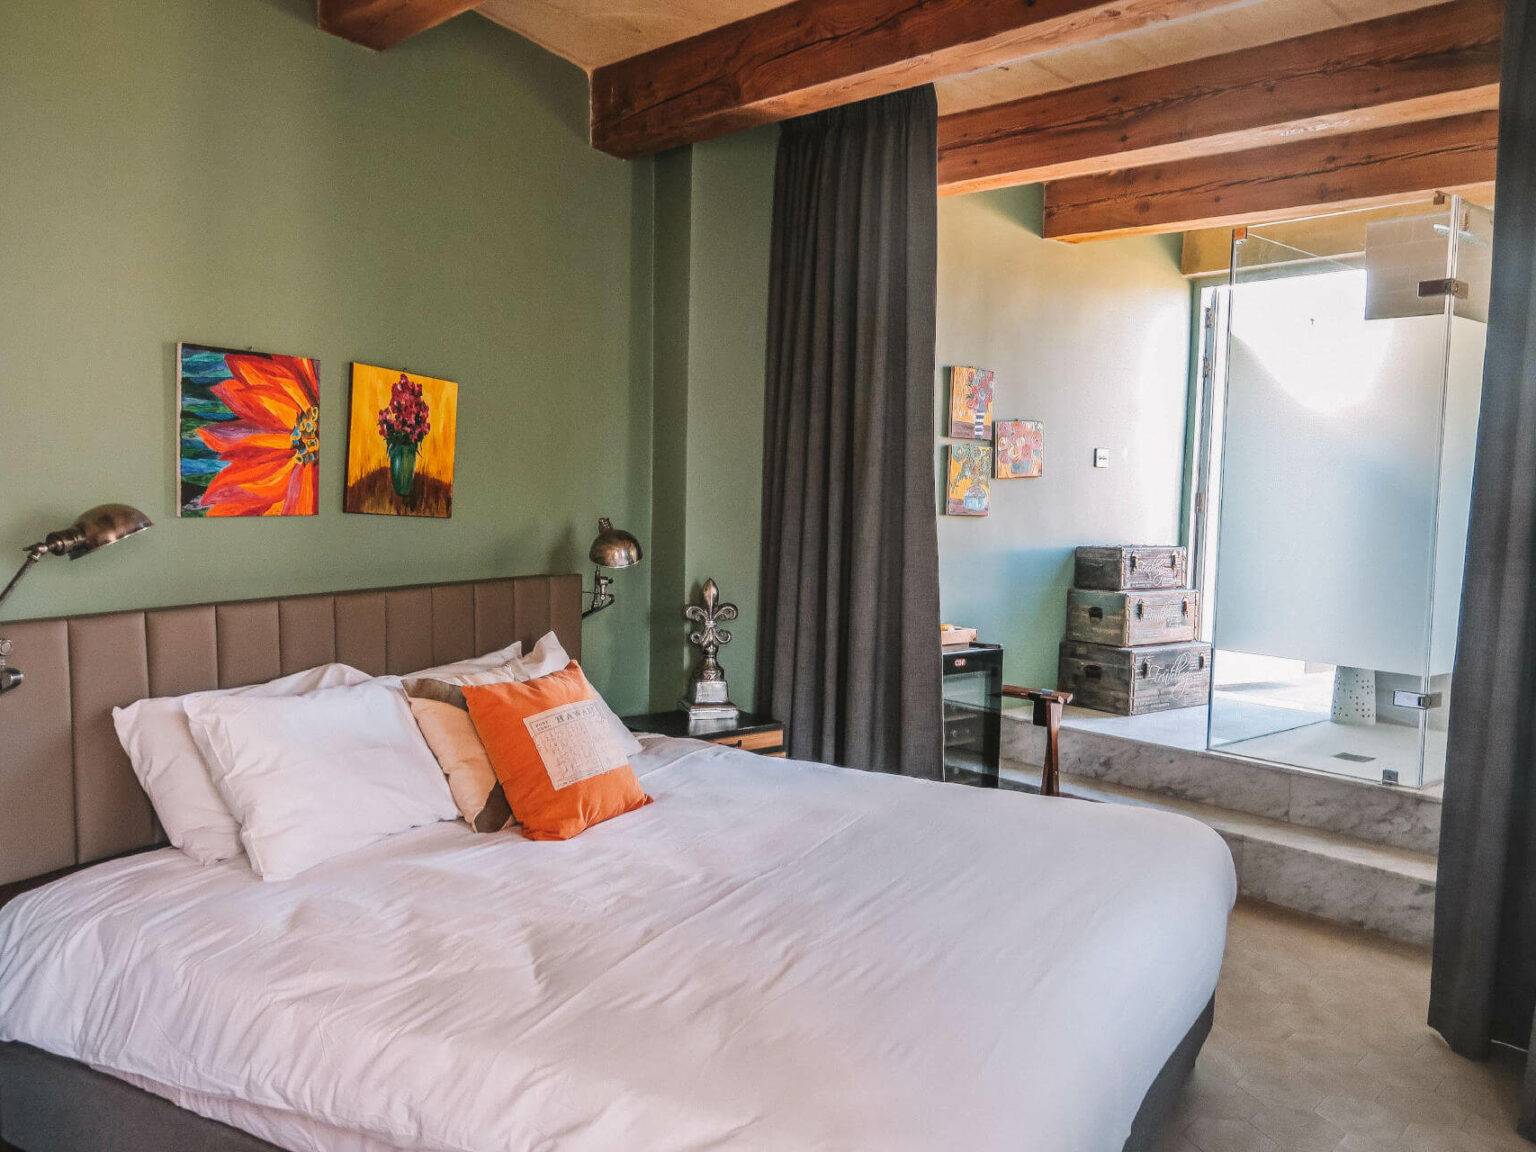 Ein Schlafzimmer mit einem Bett und einer grün gestrichenen Wand.